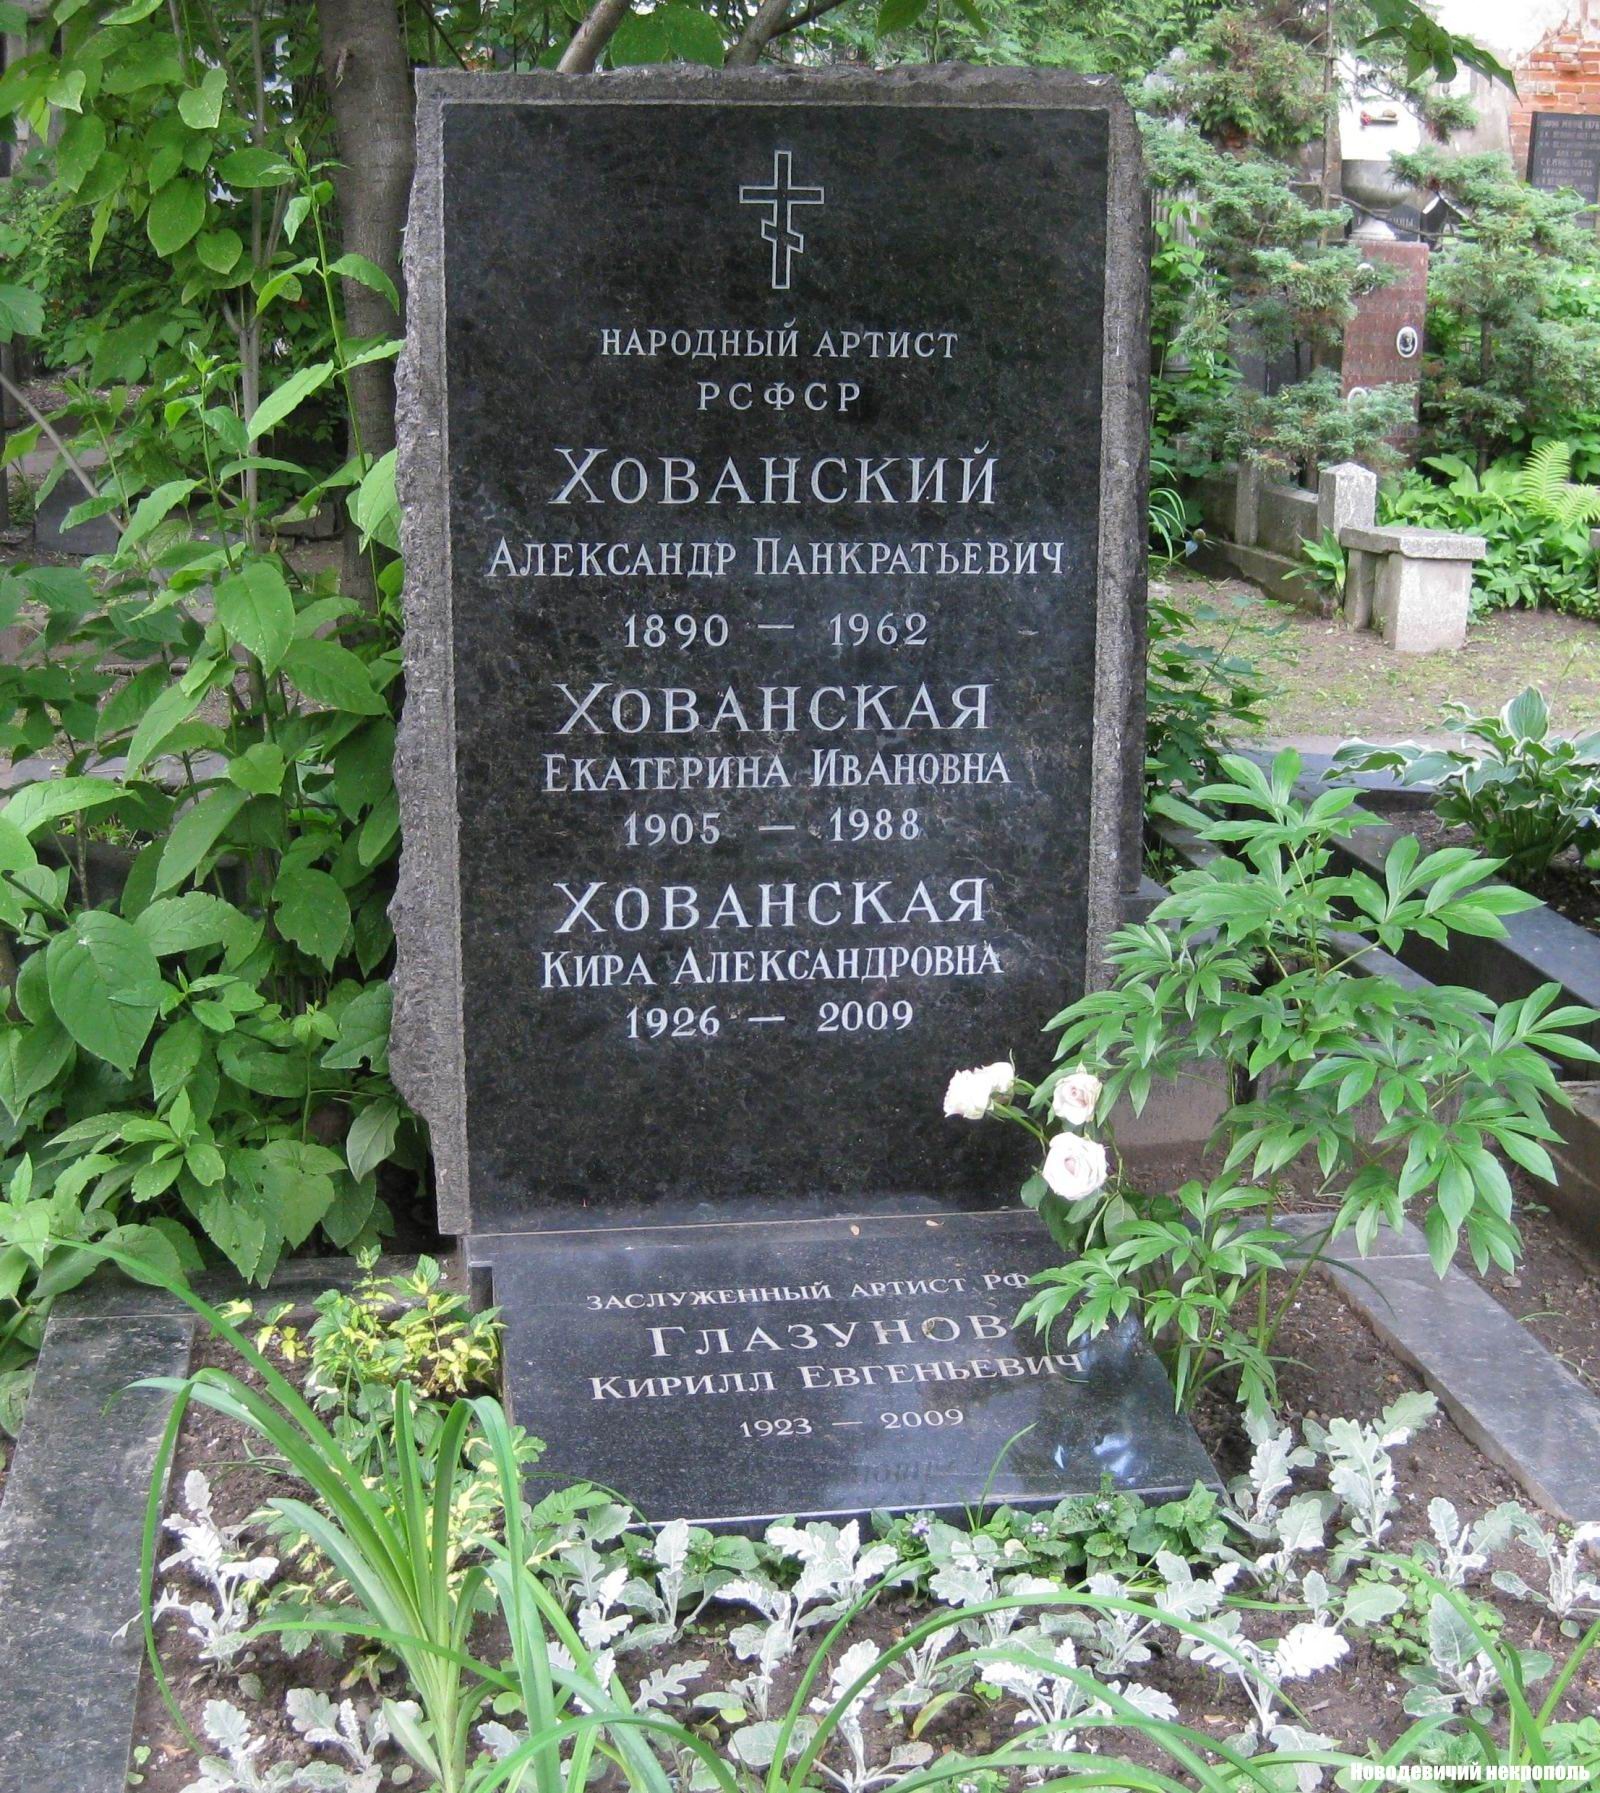 Памятник на могиле Хованского А.П. (1890-1962) и Глазунова К.Е. (1923-2009), на Новодевичьем кладбище (3-61-23).